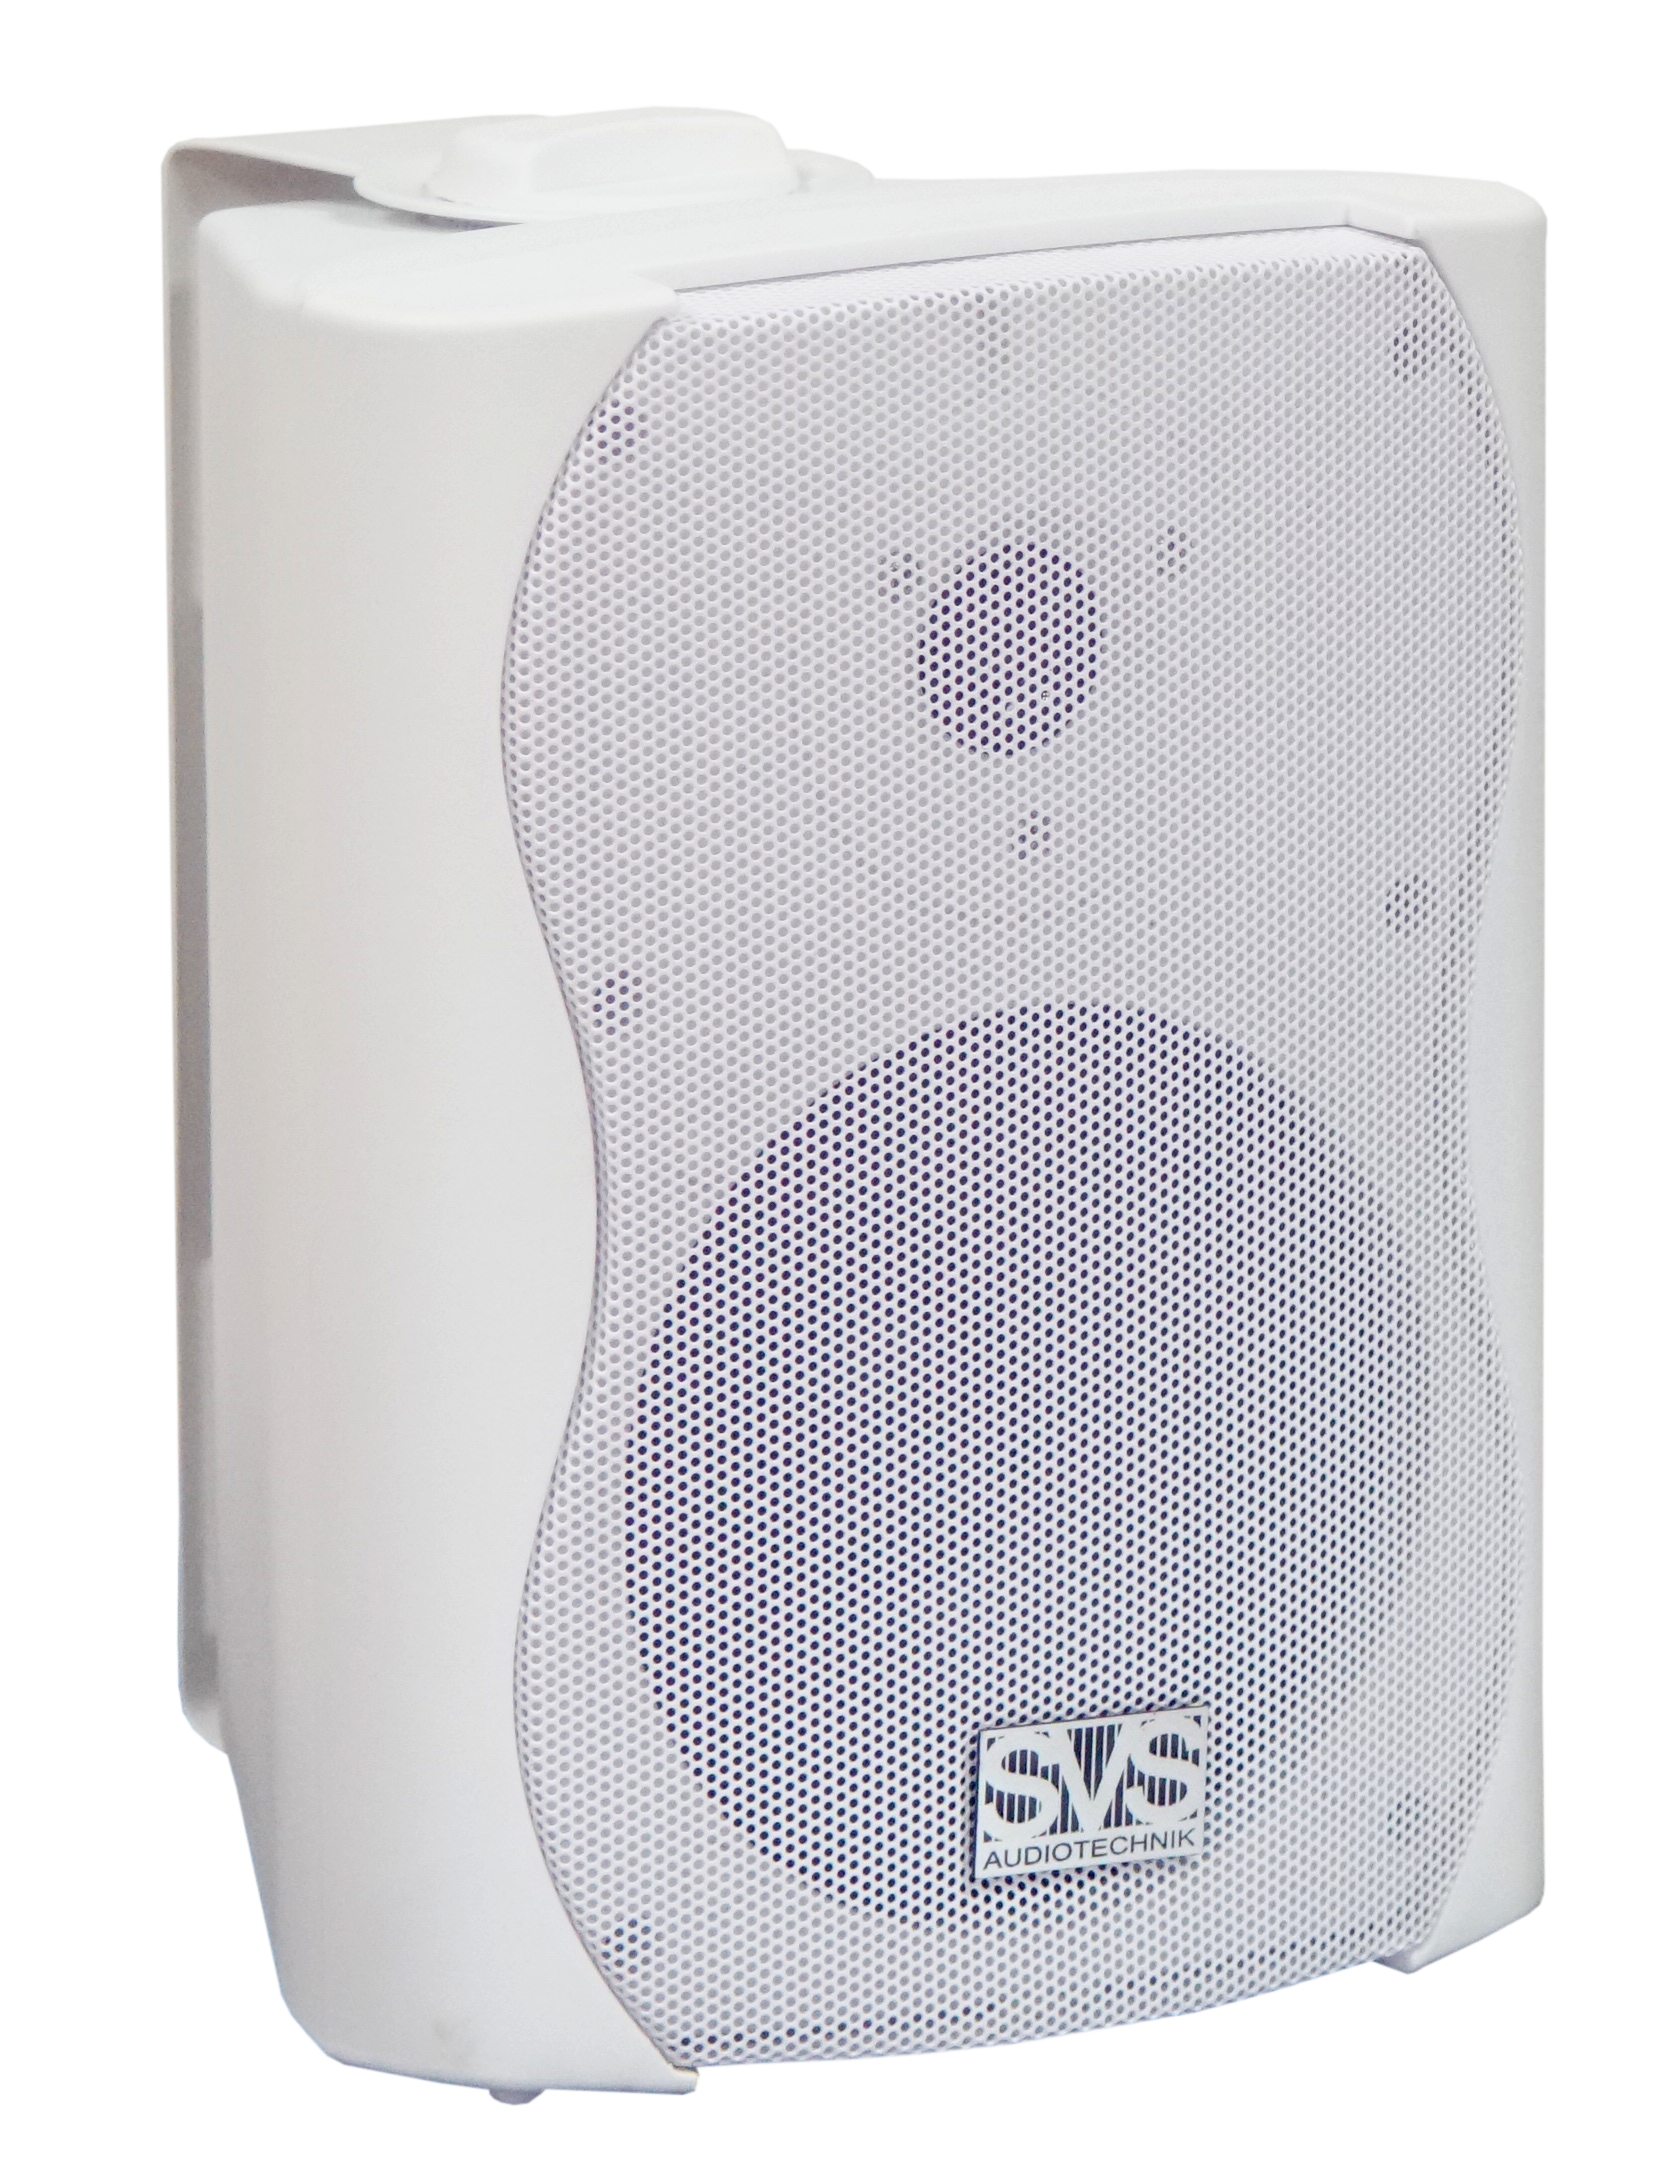 SVS Audiotechnik WS-30 White Громкоговоритель настенный, 30В, цвет белый купить в prostore.me